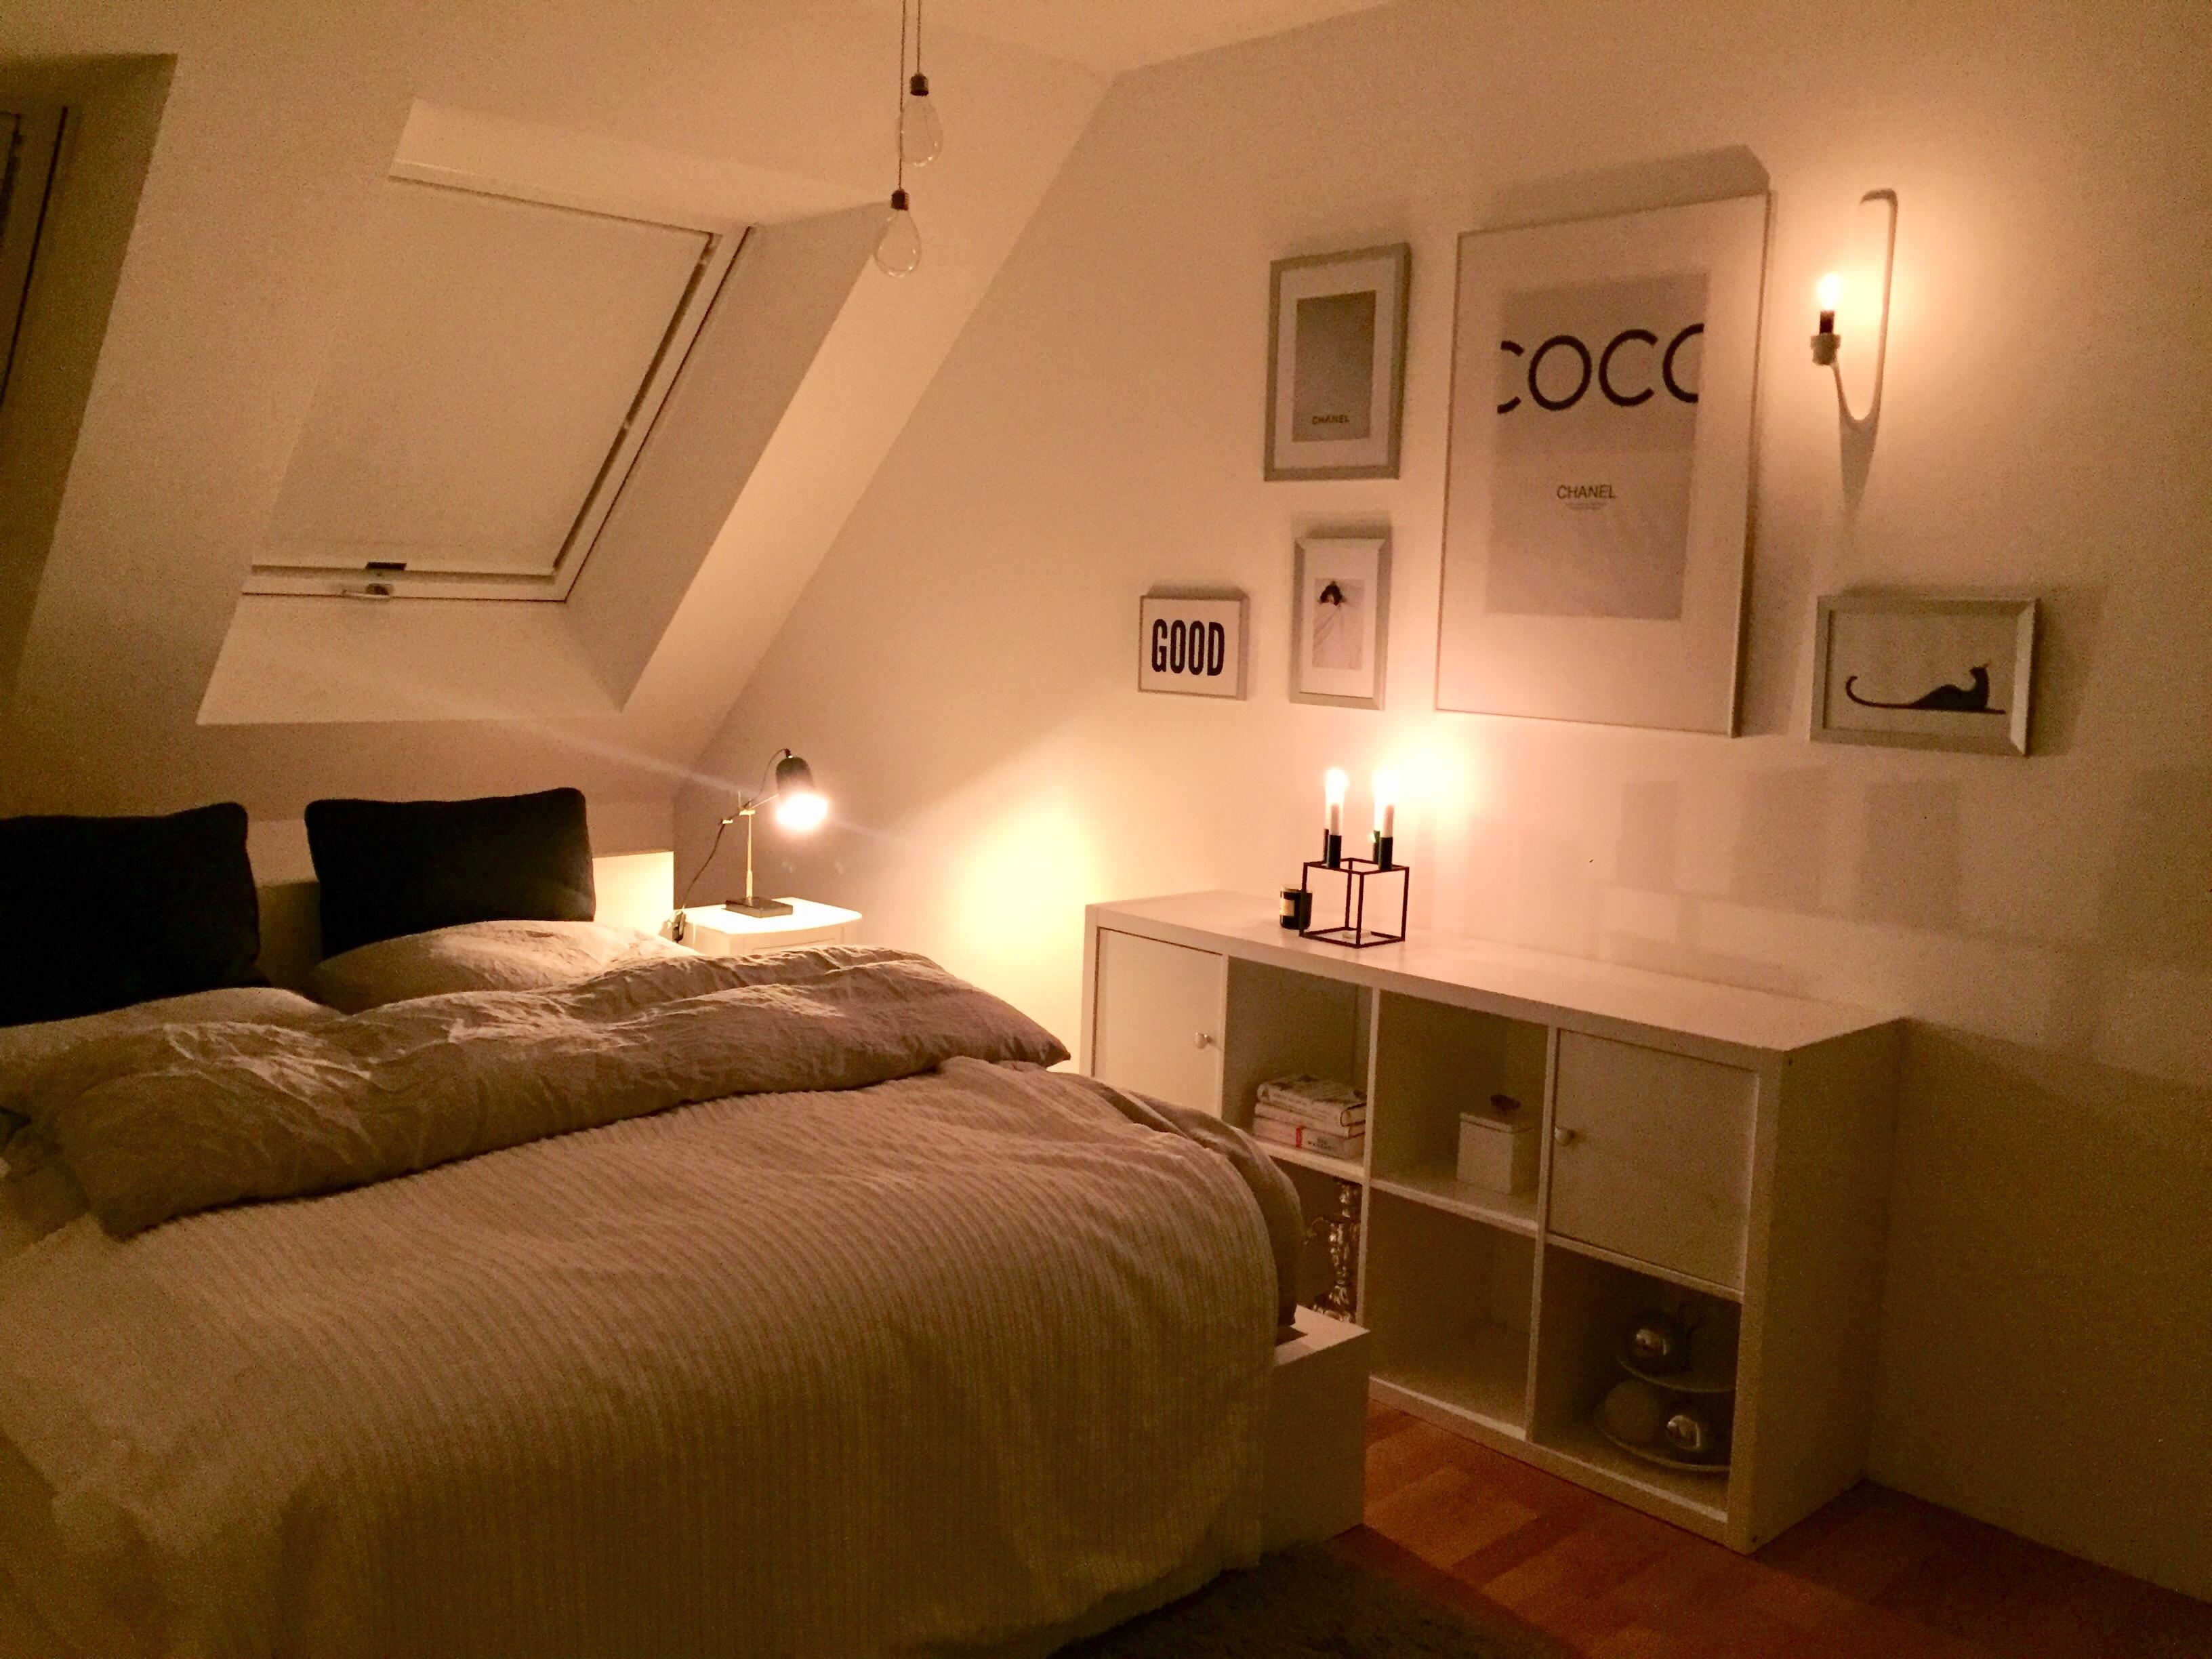 Schlafzimmer unterm Dach: am besten ohne Schrank 😇
#schlafzimmer #dachgeschoss #lichtquellen #schwarzweiss